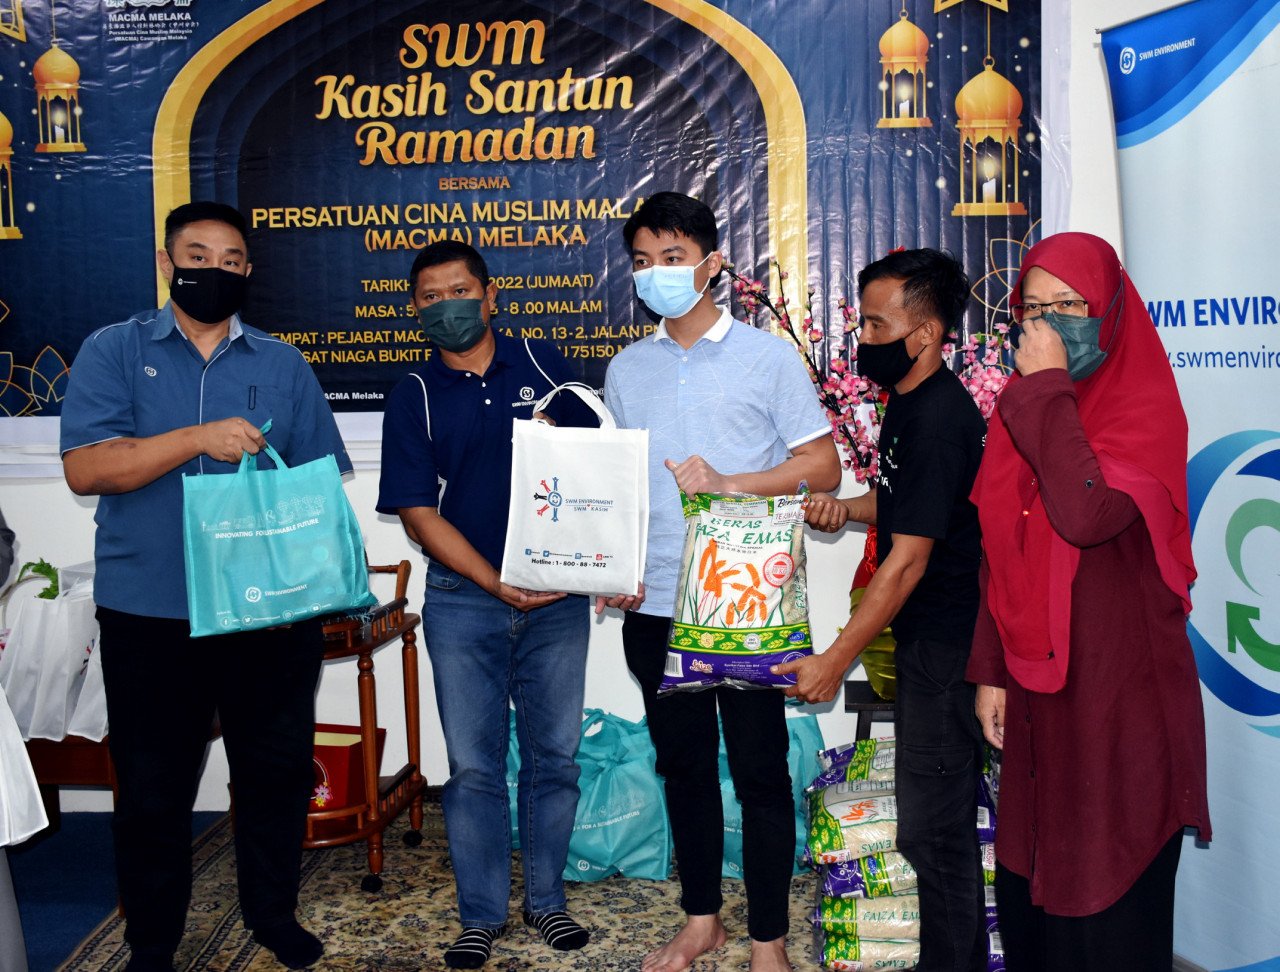 Pengurus Besar Korporat SWM Environment Sdn Bhd (SWM Environment), Mohd Norlisam Mohd Nordin (dua, kiri) menyampaikan sumbangan kepada saudara baharu yang mahu dikenali sebagai Muhamad, 29, (tengah) pada Majlis SWM Environment Kasih Santun Ramadan. Gambar: Bernama